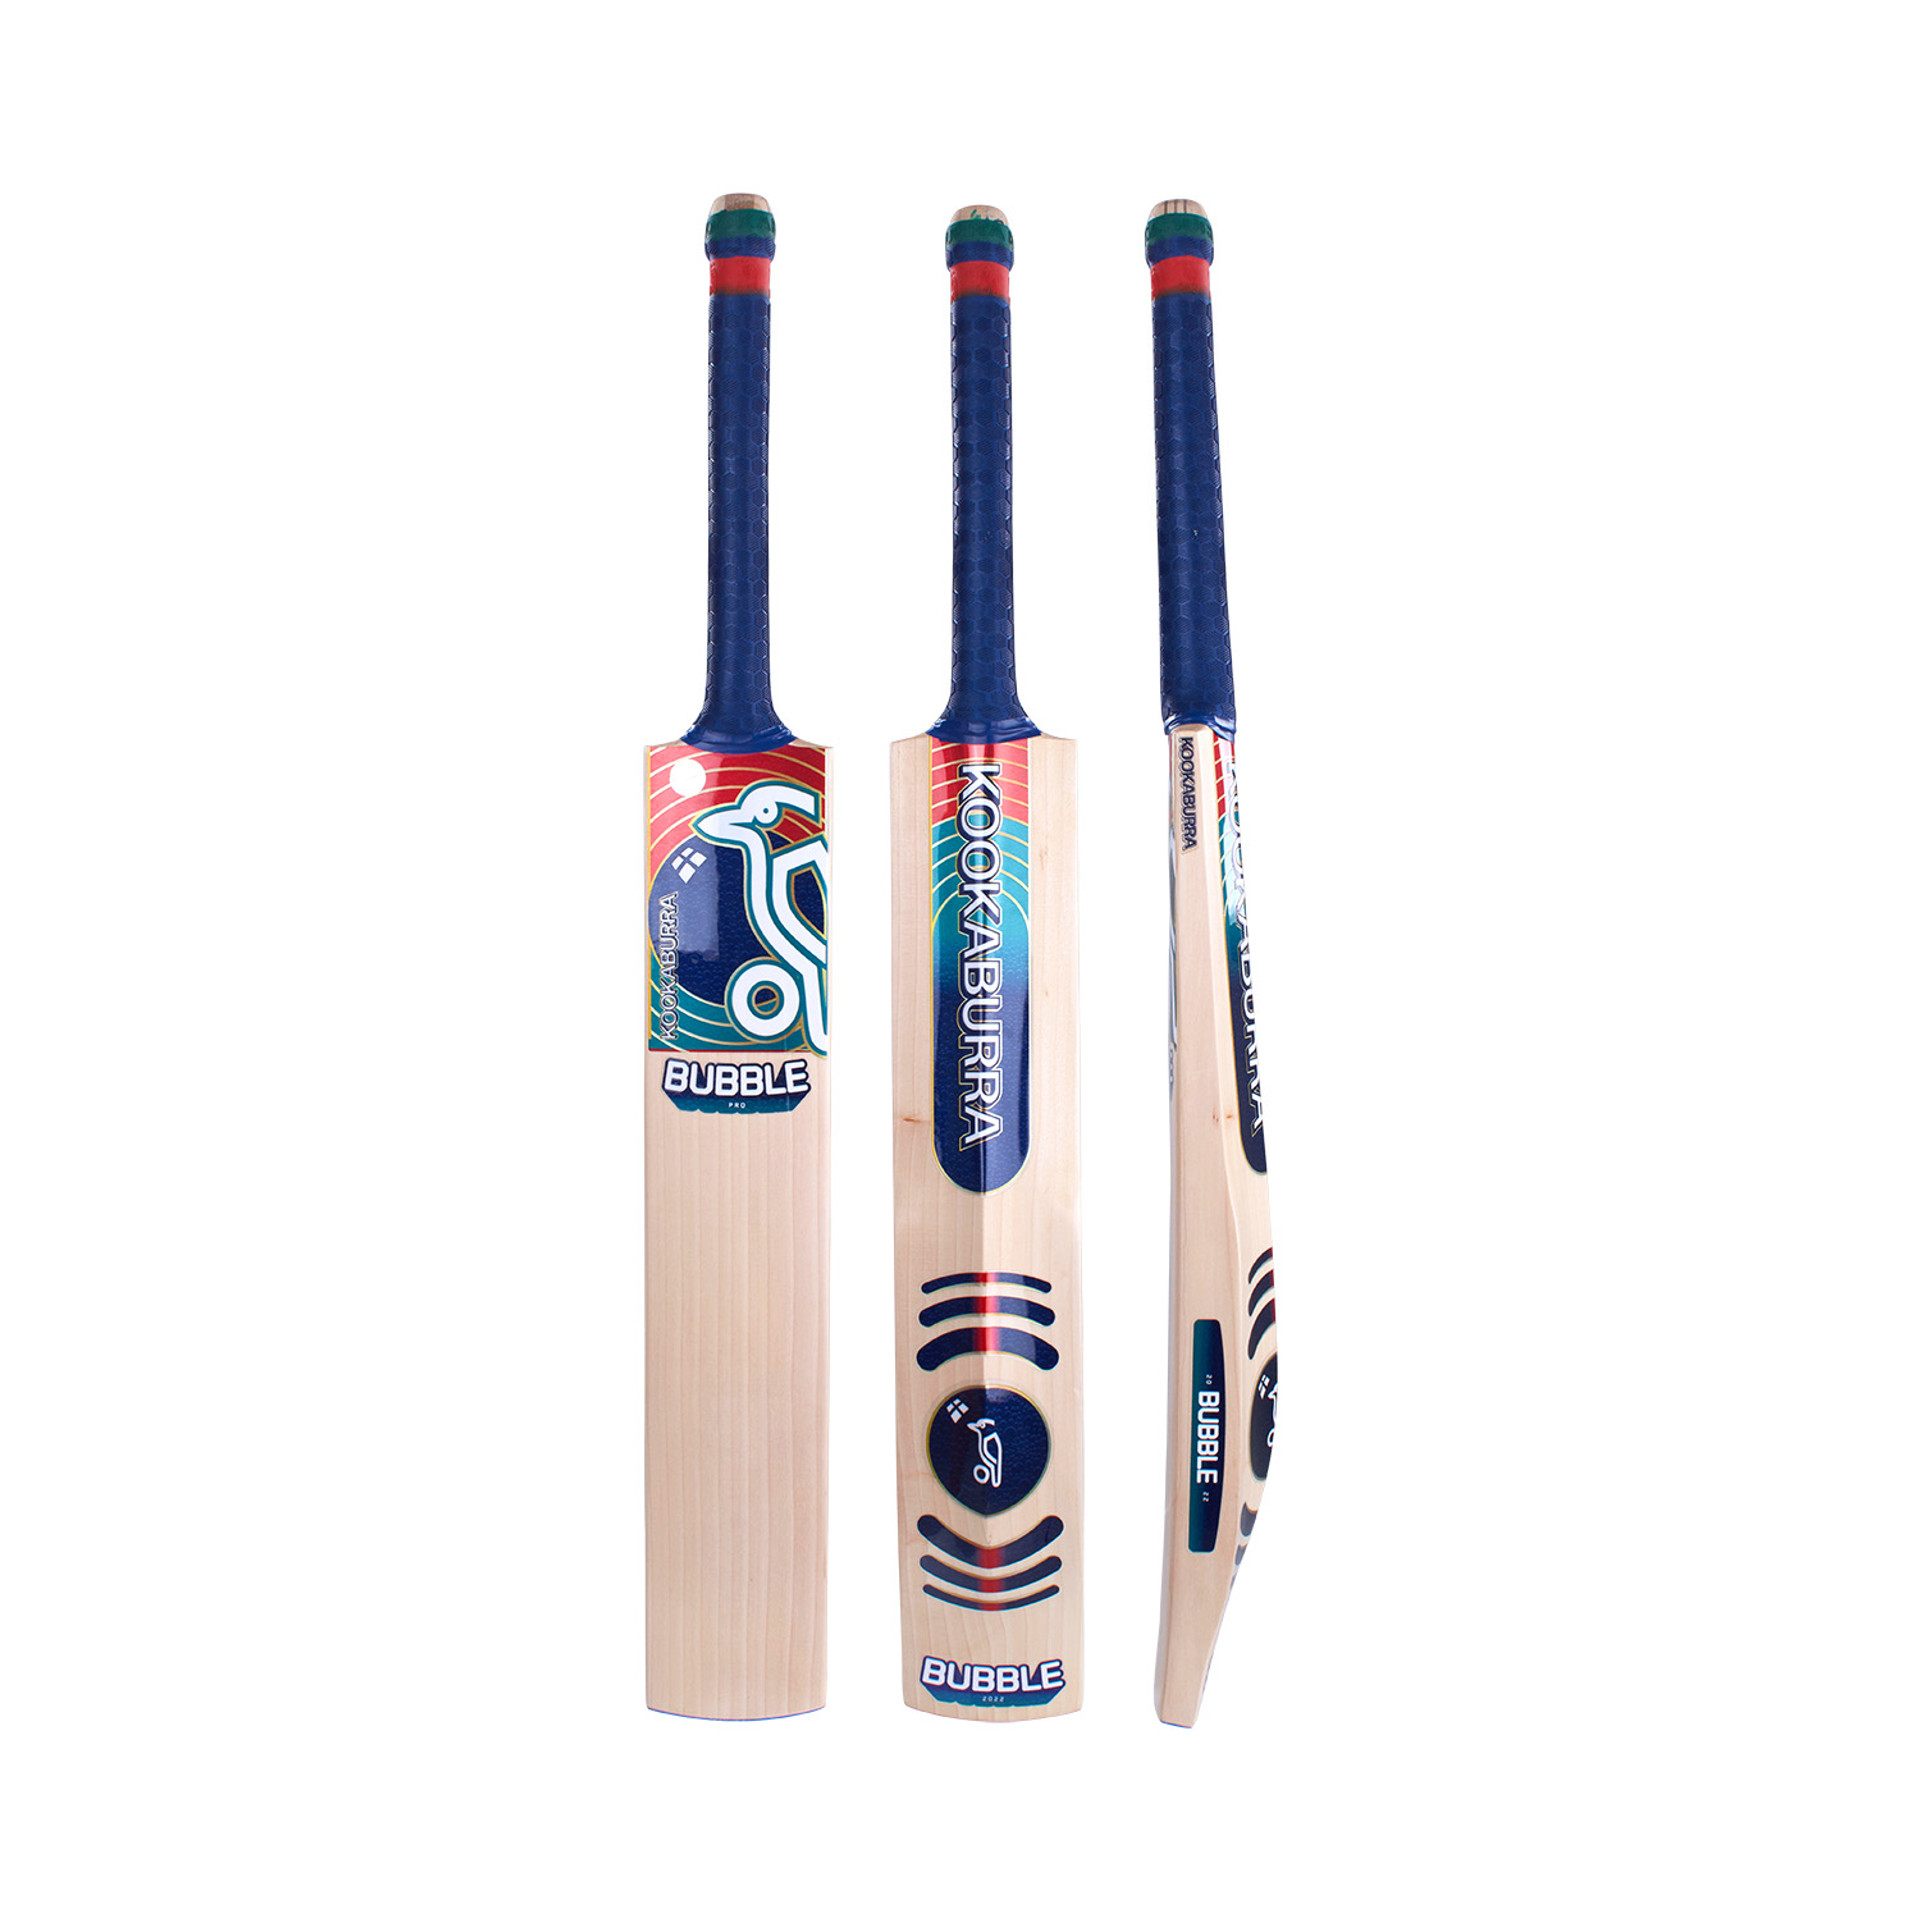 Buy Kookaburra Cricket Bats Online - Cricket Store Online